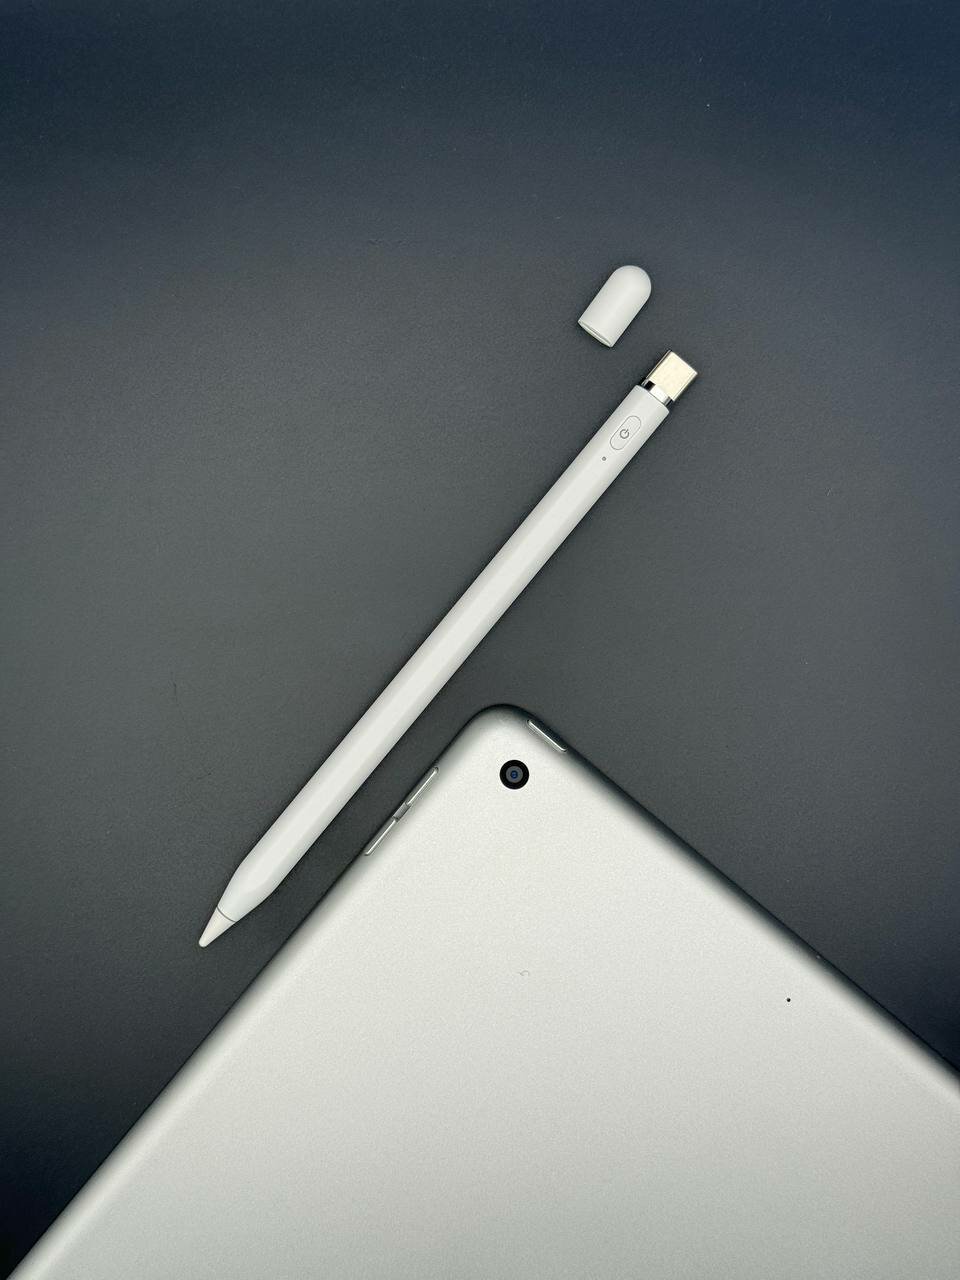 Стилус с Type-C для iPad 2018, 2019, 2020, 2021, 2022 +2 наконечника. С изменением толщины линии от угла наклона